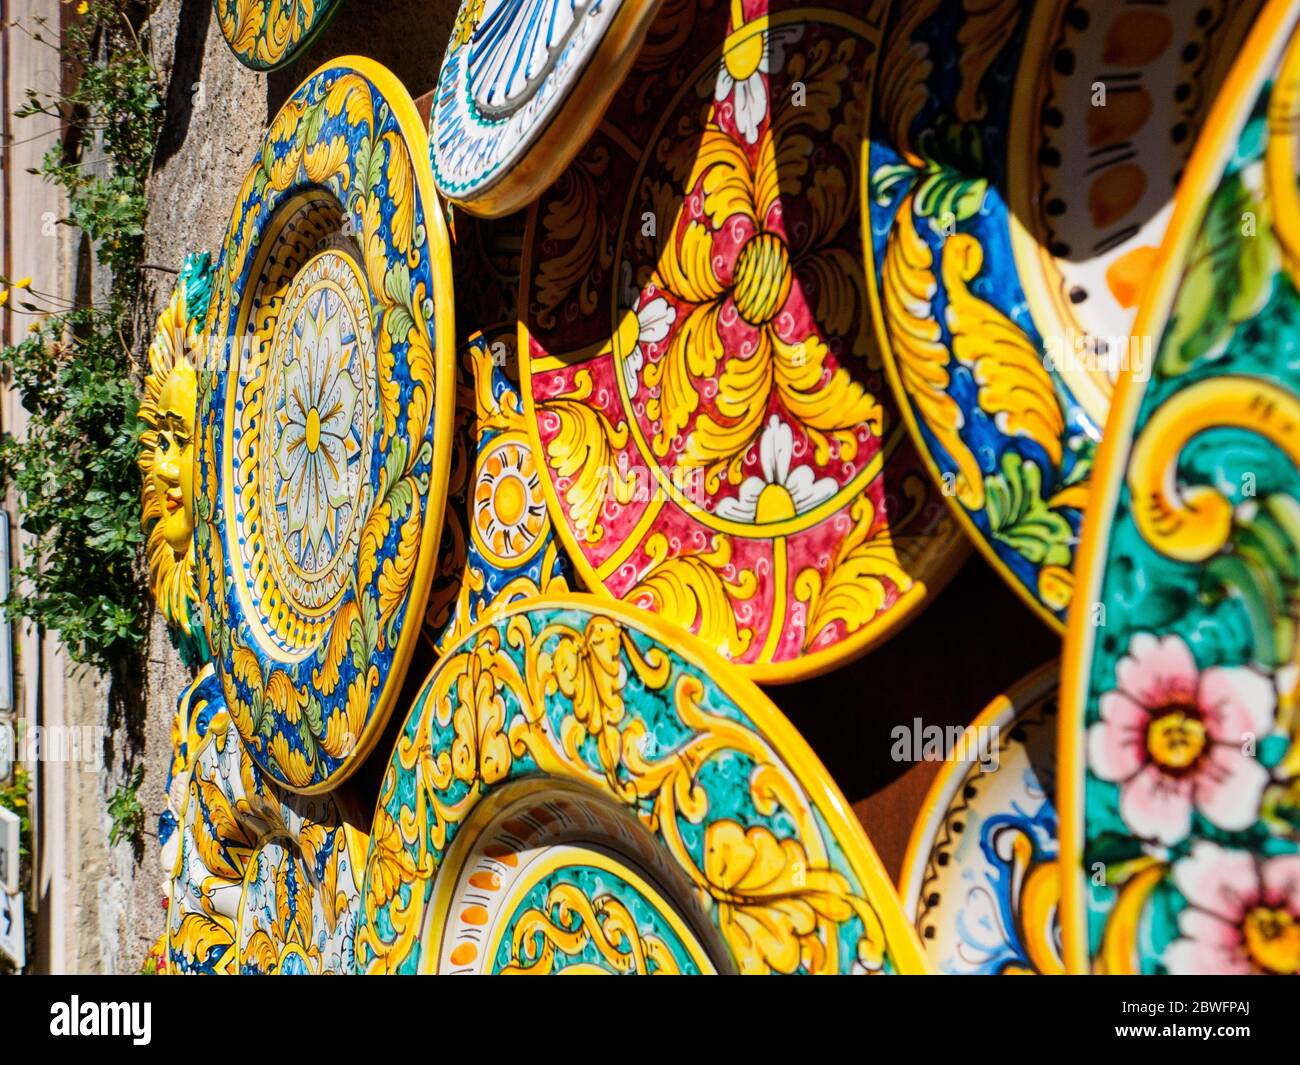 Una delle opere d'arte tipiche di una piccola cittadina siciliana, Erice, è la ceramica colorata fatta a mano. Foto Stock